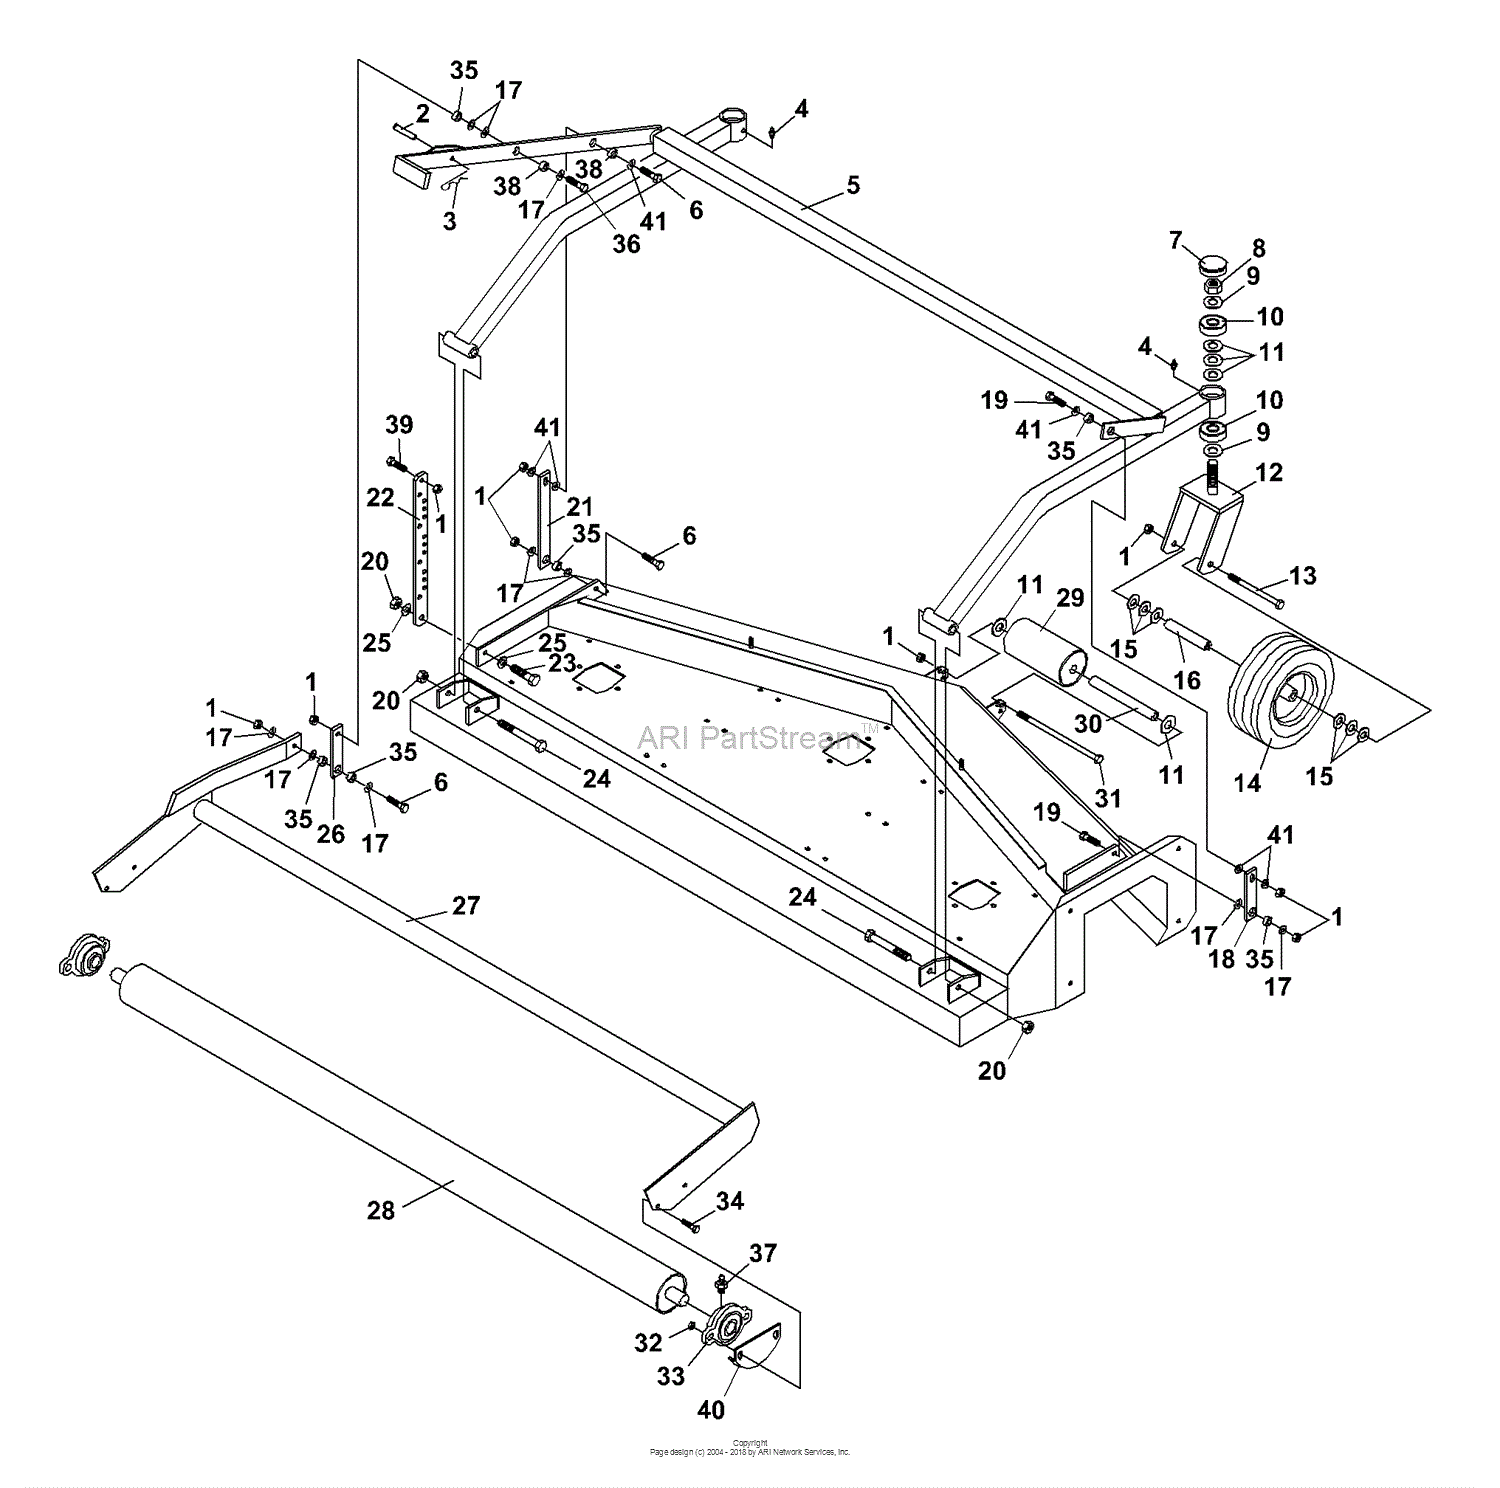 icecap 430 wiring diagram